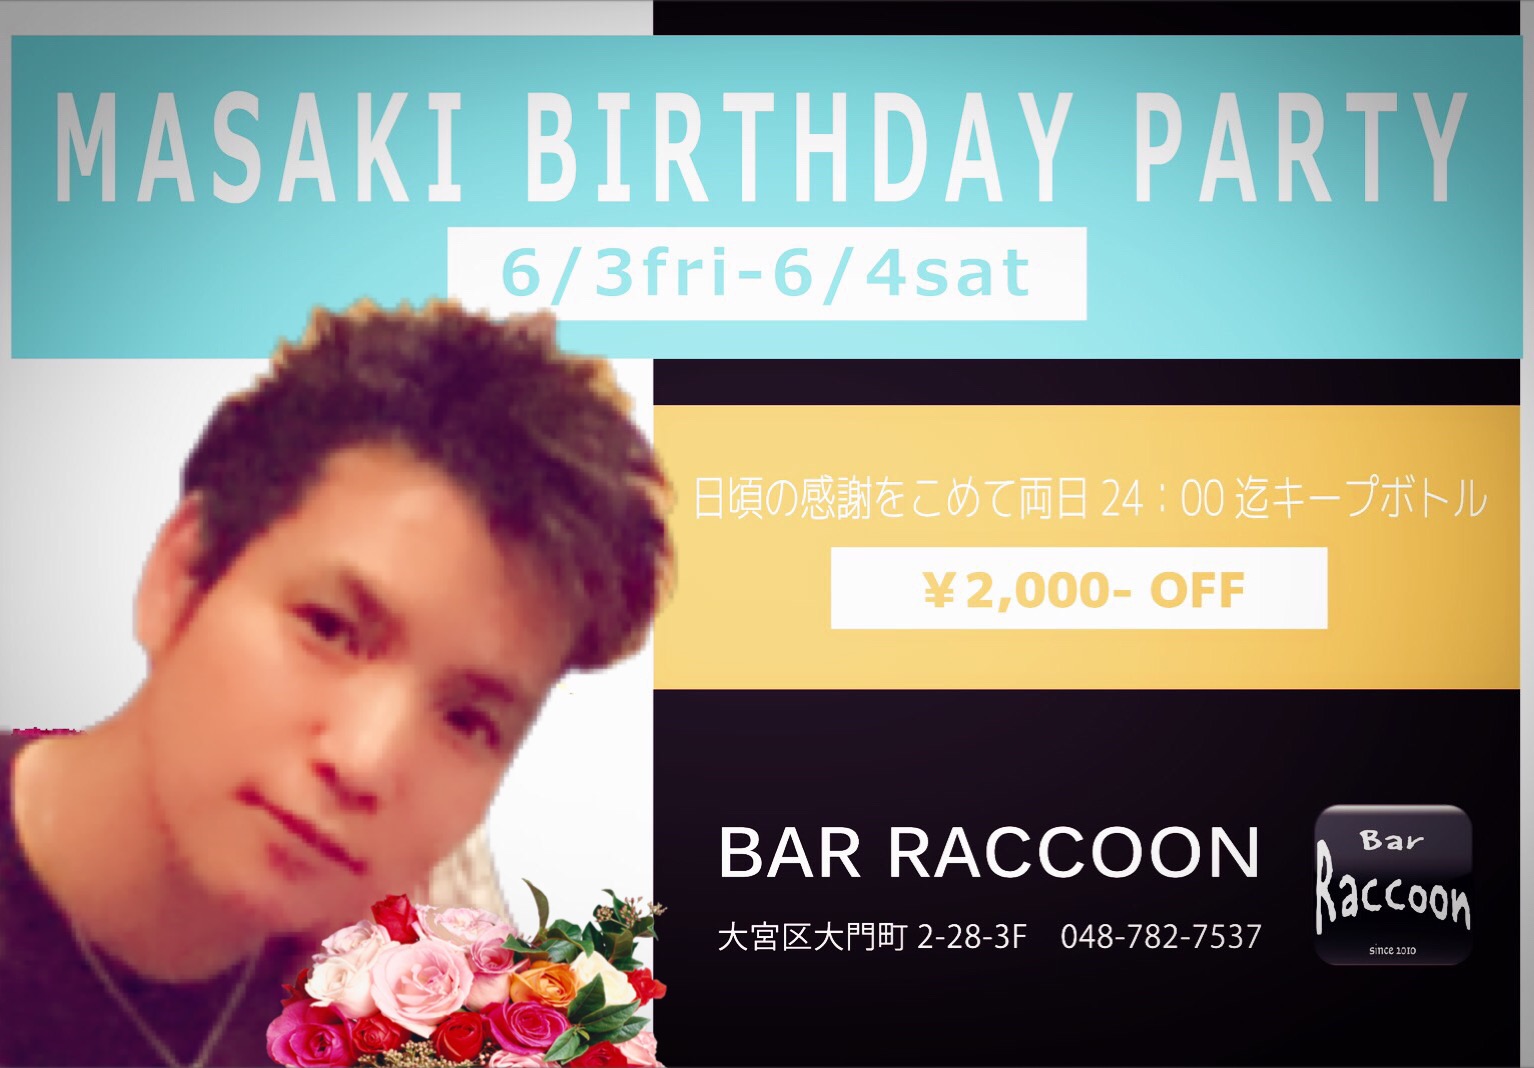 大宮 Bar Raccoon masaki birthday party